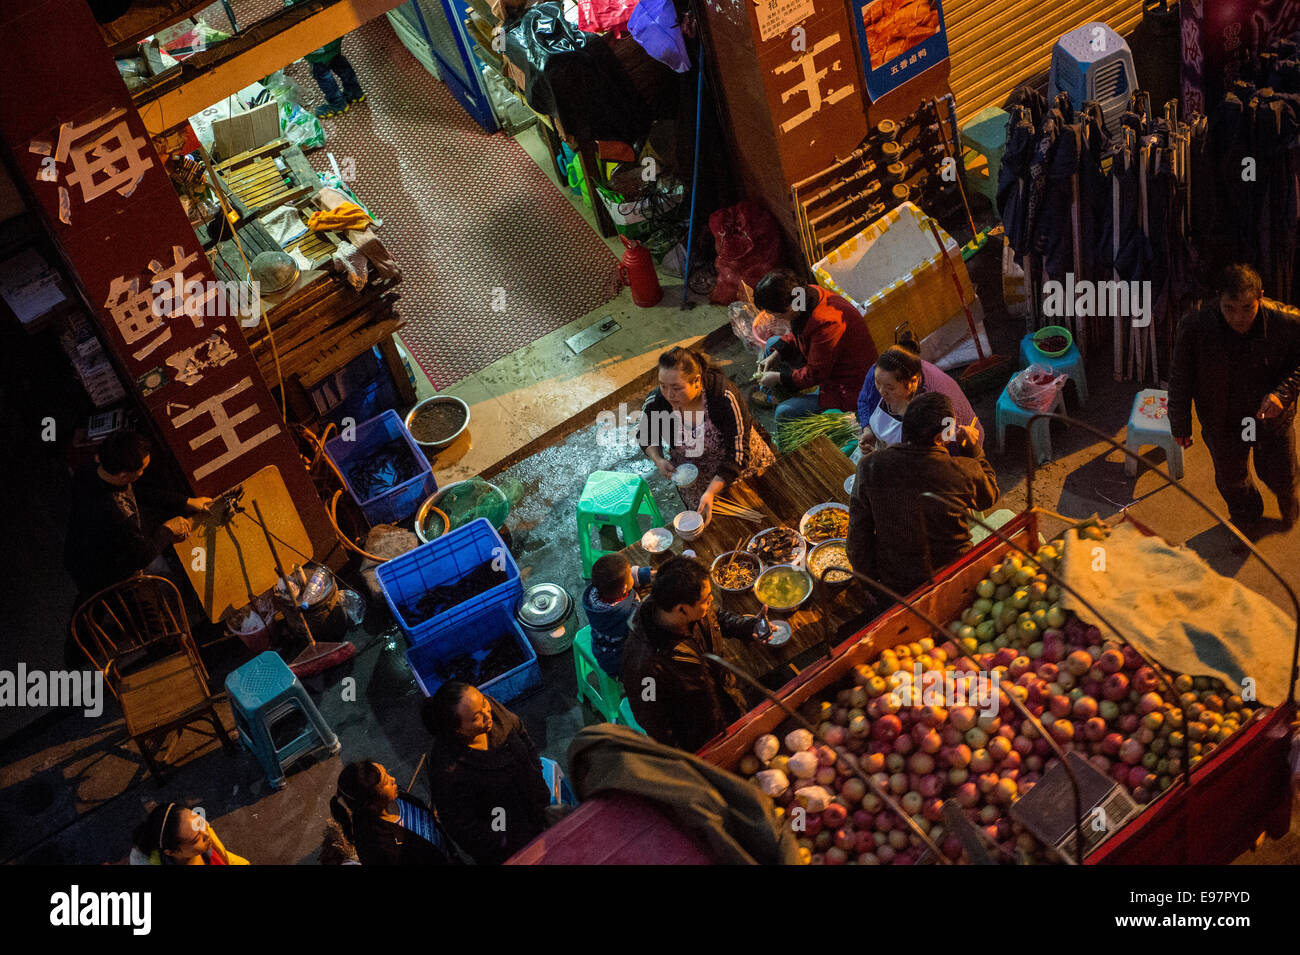 Persone trambusto anche se il mercato di sera in Cina. (Foto di Ami vitale) Foto Stock